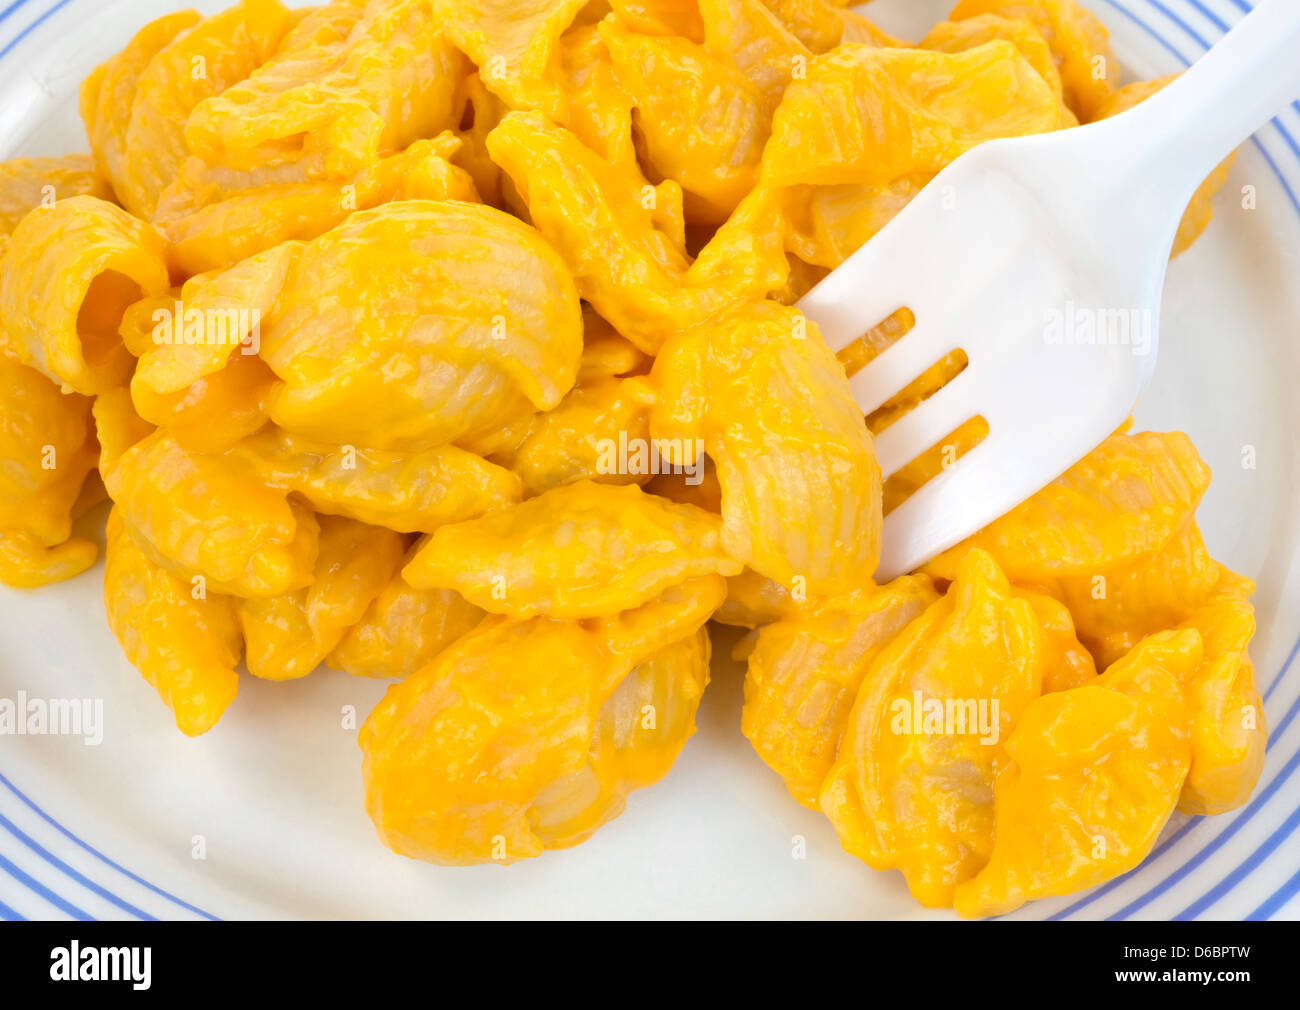 Ganz in der Nähe Blick auf eine kleine Portion Nudeln Muscheln mit Käse-Sauce auf einem Teller mit einer Gabel aus Kunststoff. Stockfoto